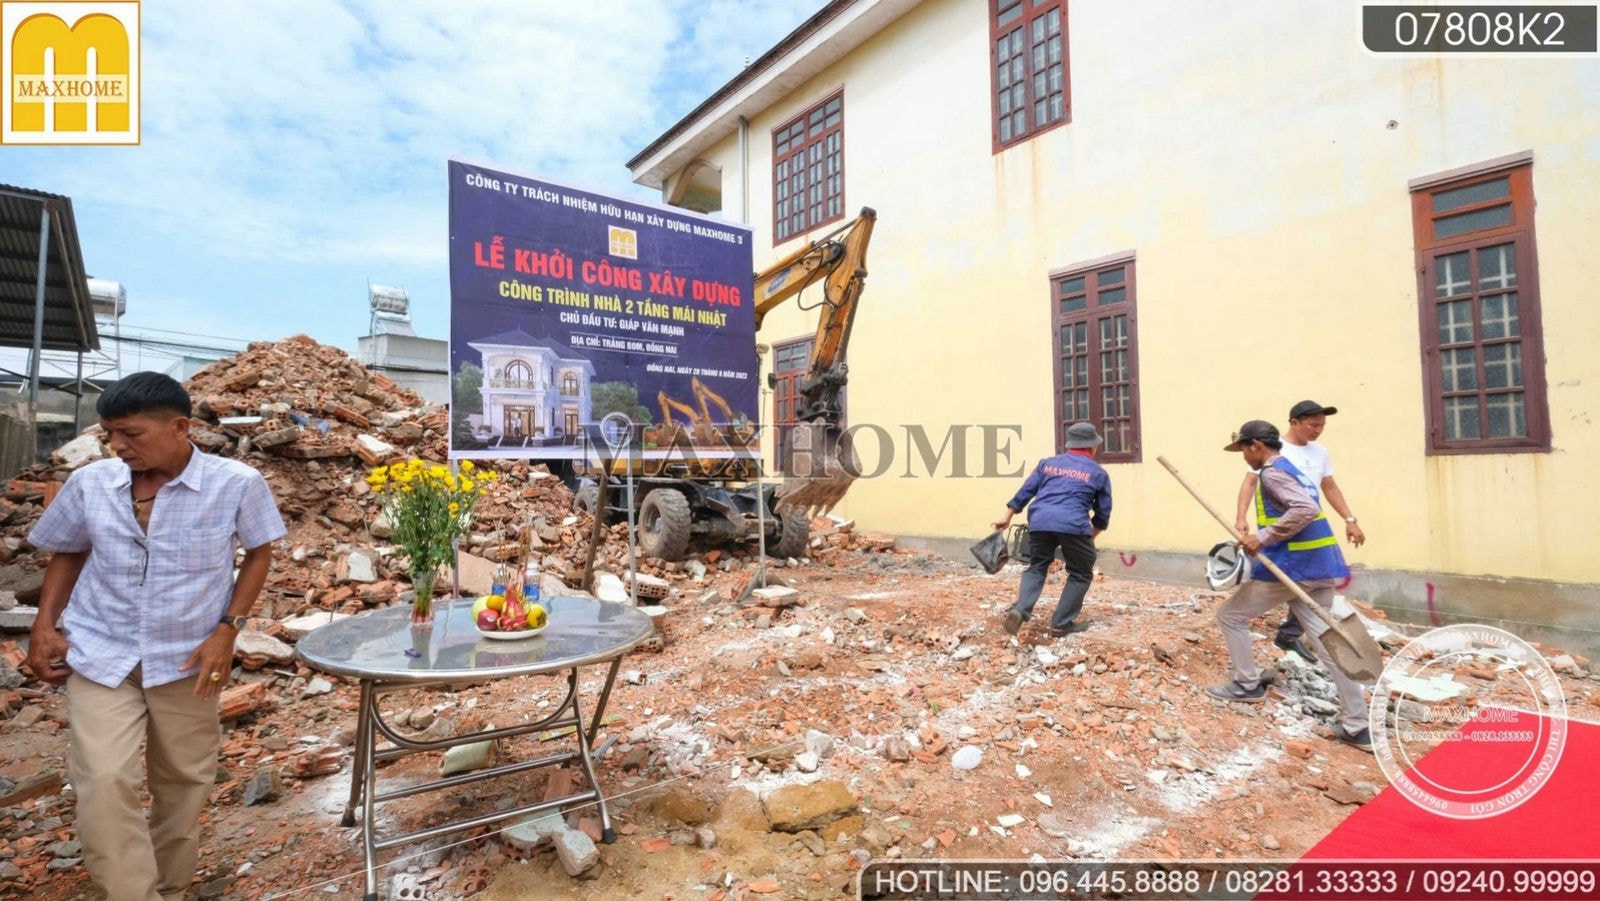 Tham gia lễ khởi công ngôi nhà 2 tầng 160m2 tại Đồng Nai | MH02231